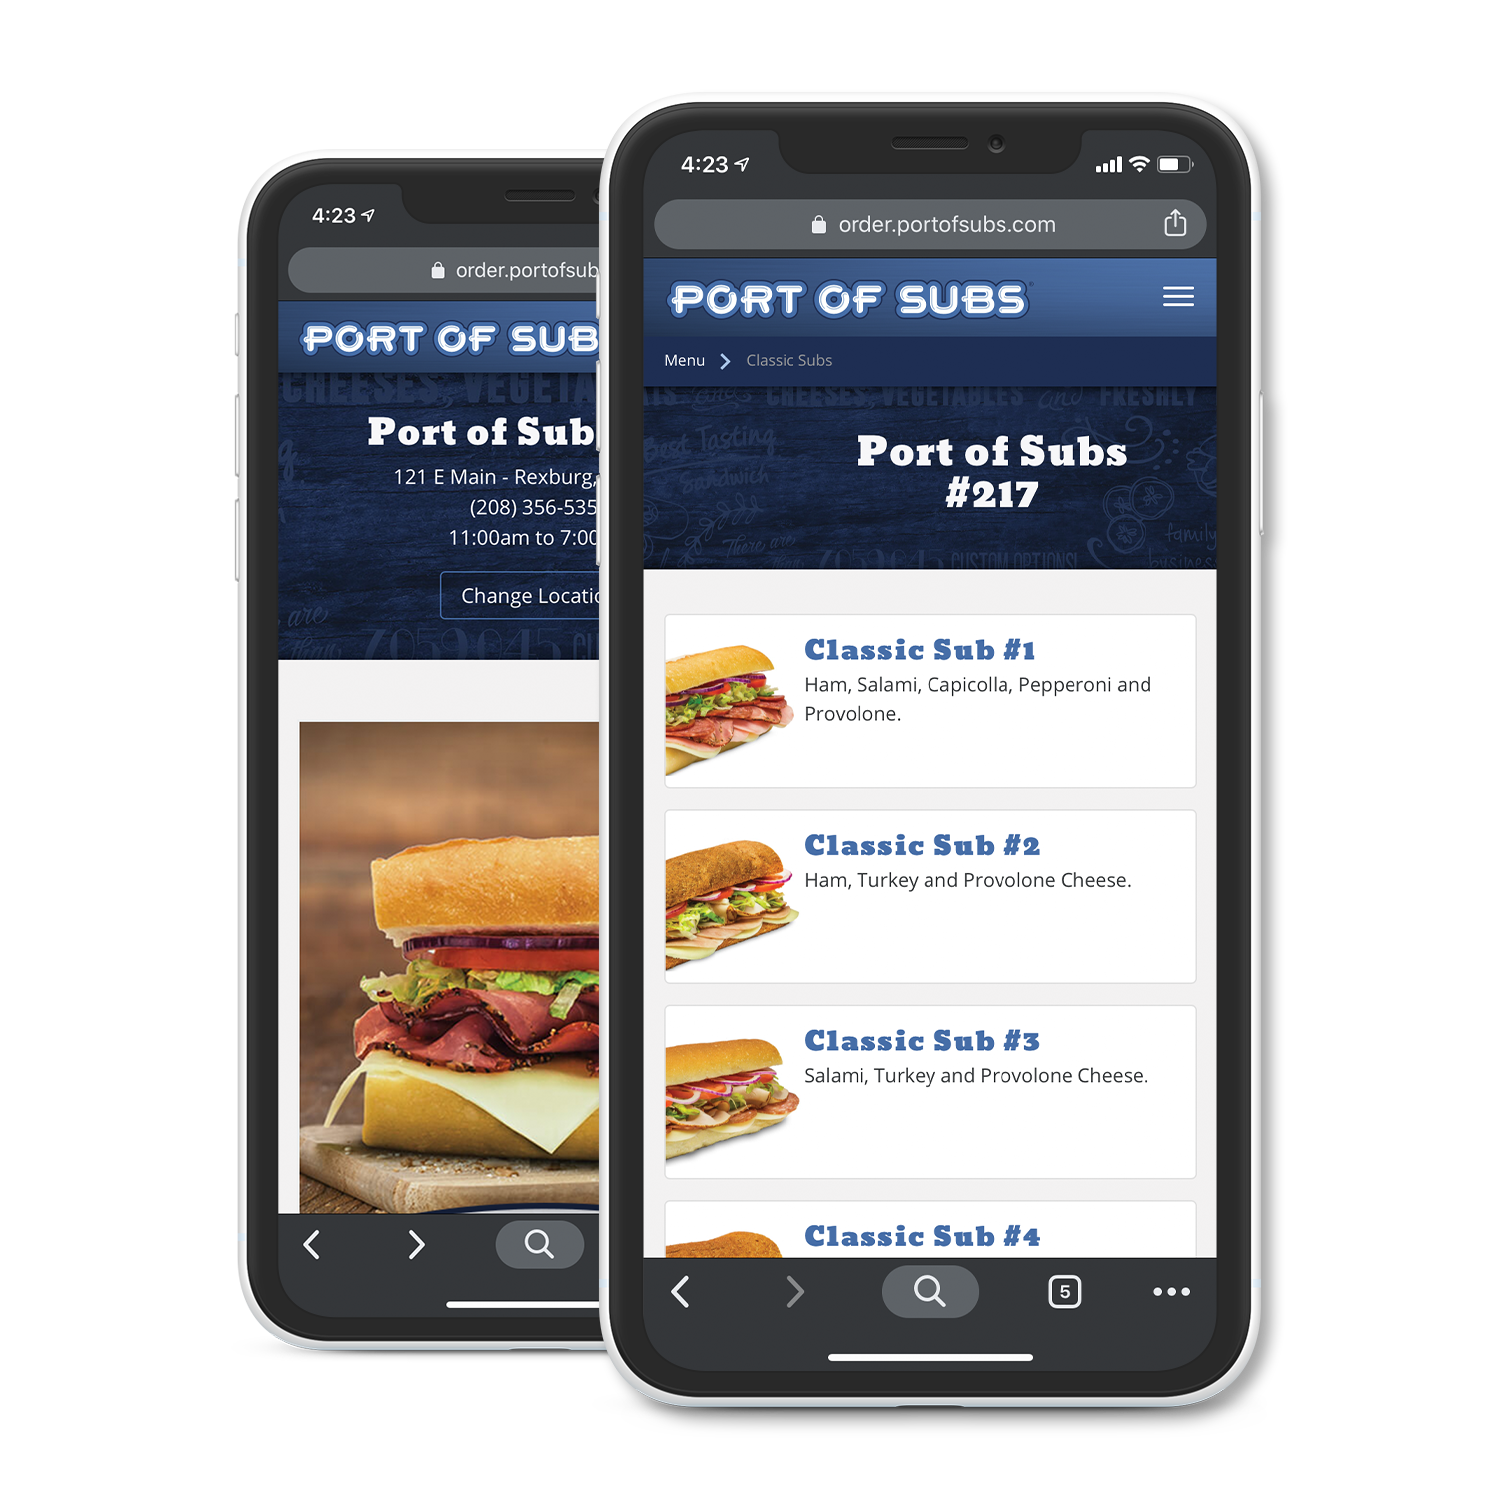 Port of subs menu